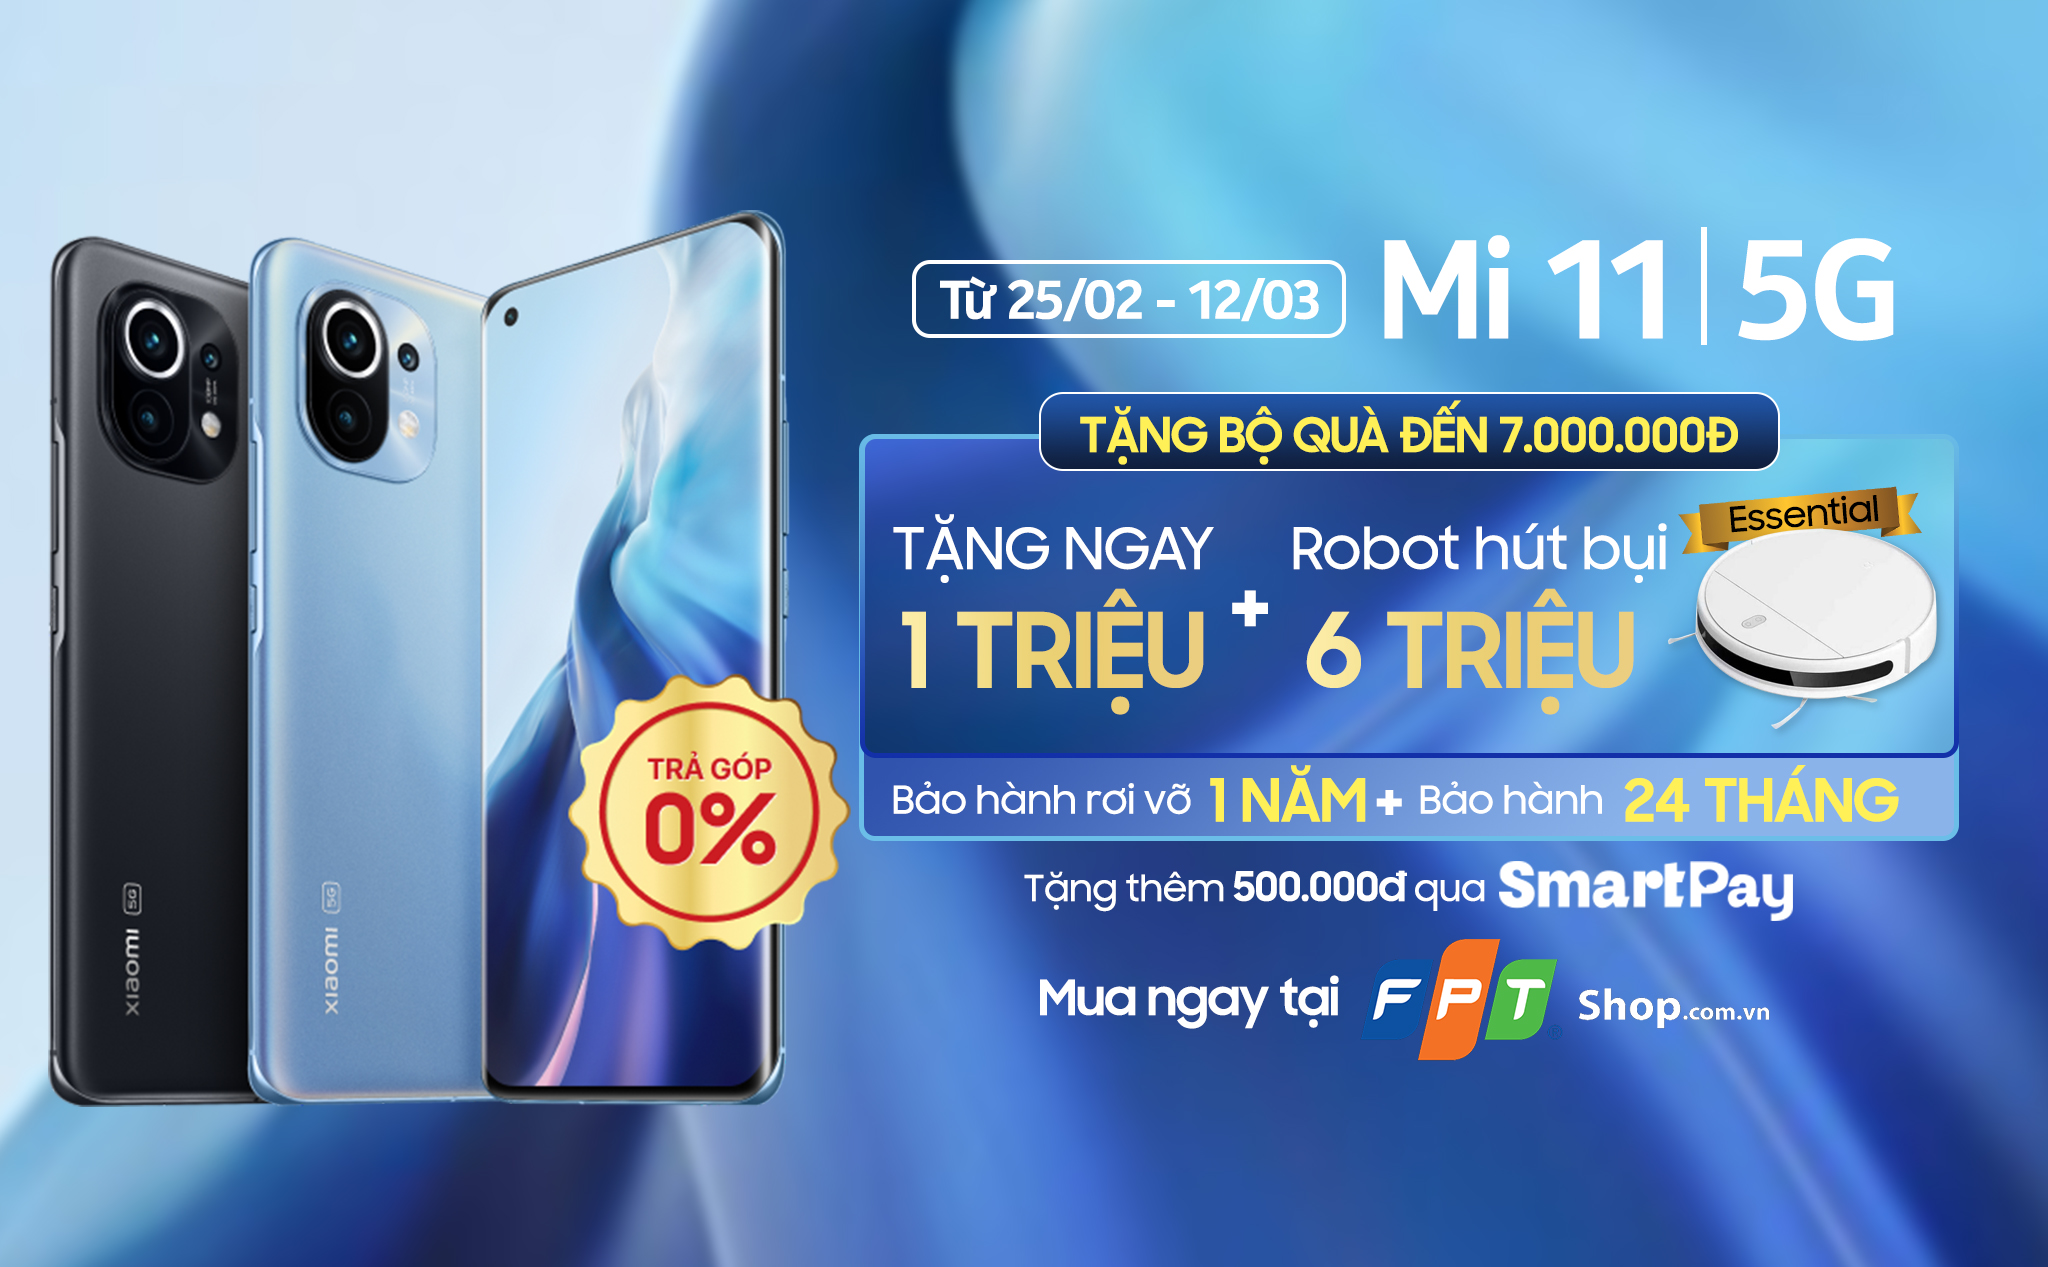 [QC] FPT Shop tặng ưu đãi đến 7,5 triệu đồng khi đặt trước Xiaomi Mi 11 5G